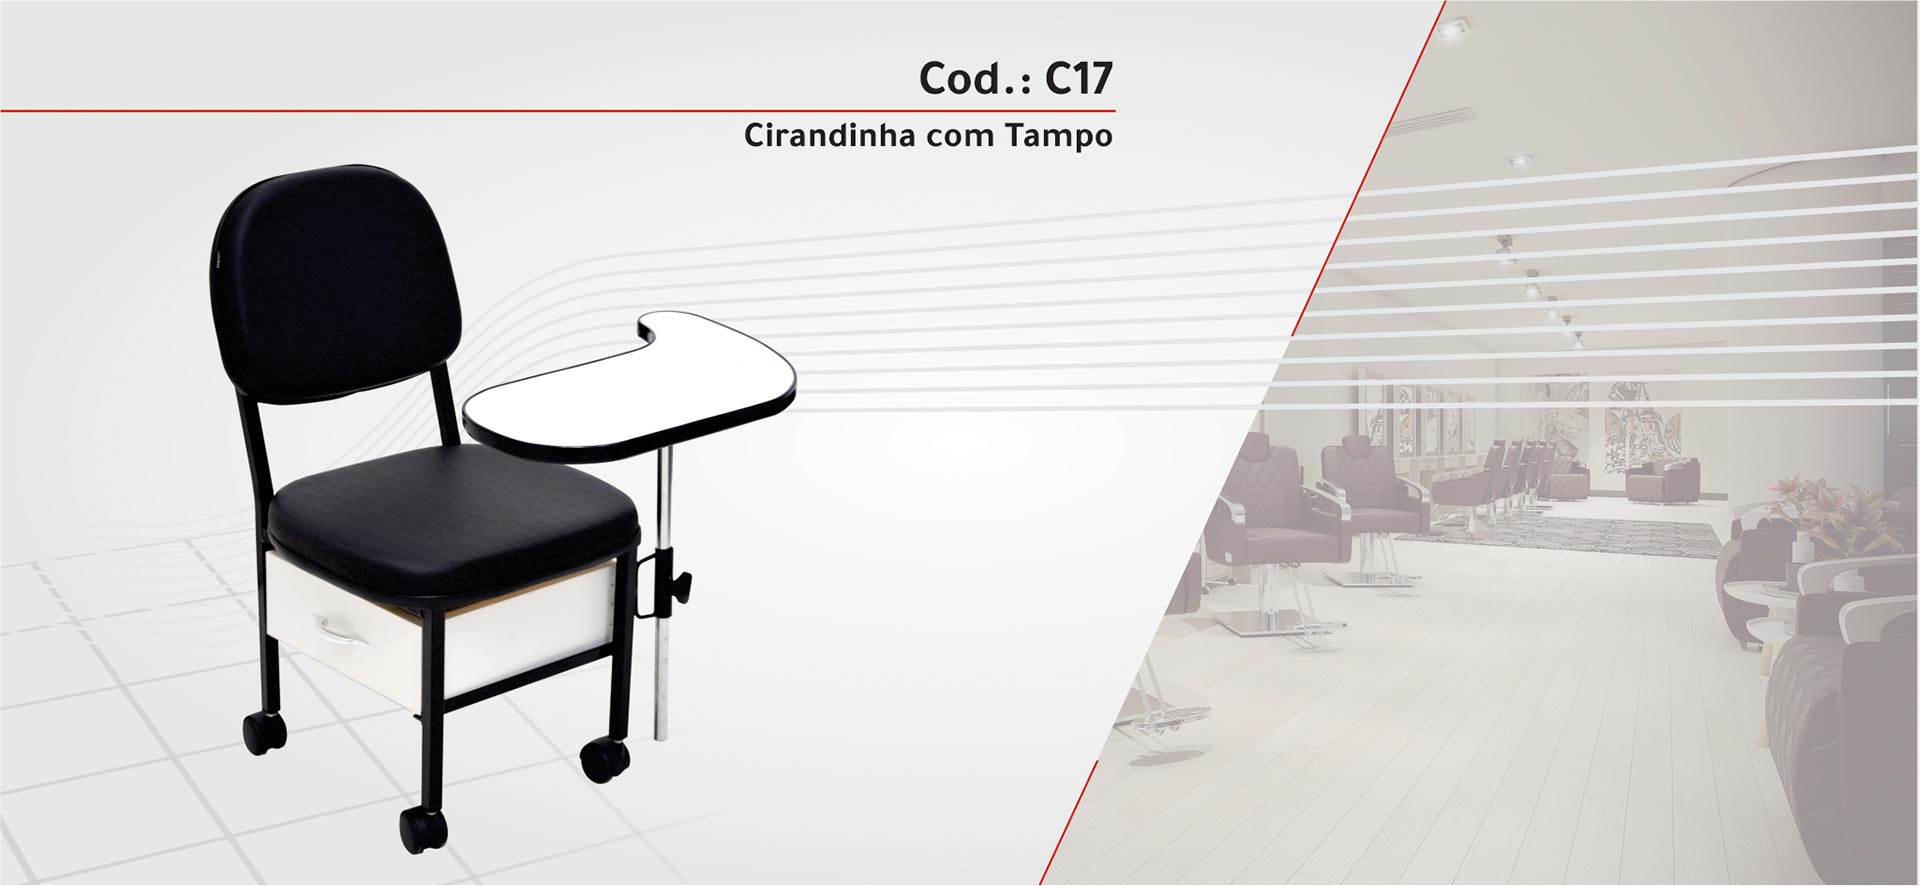 C17 - Cirandinha com Tampo